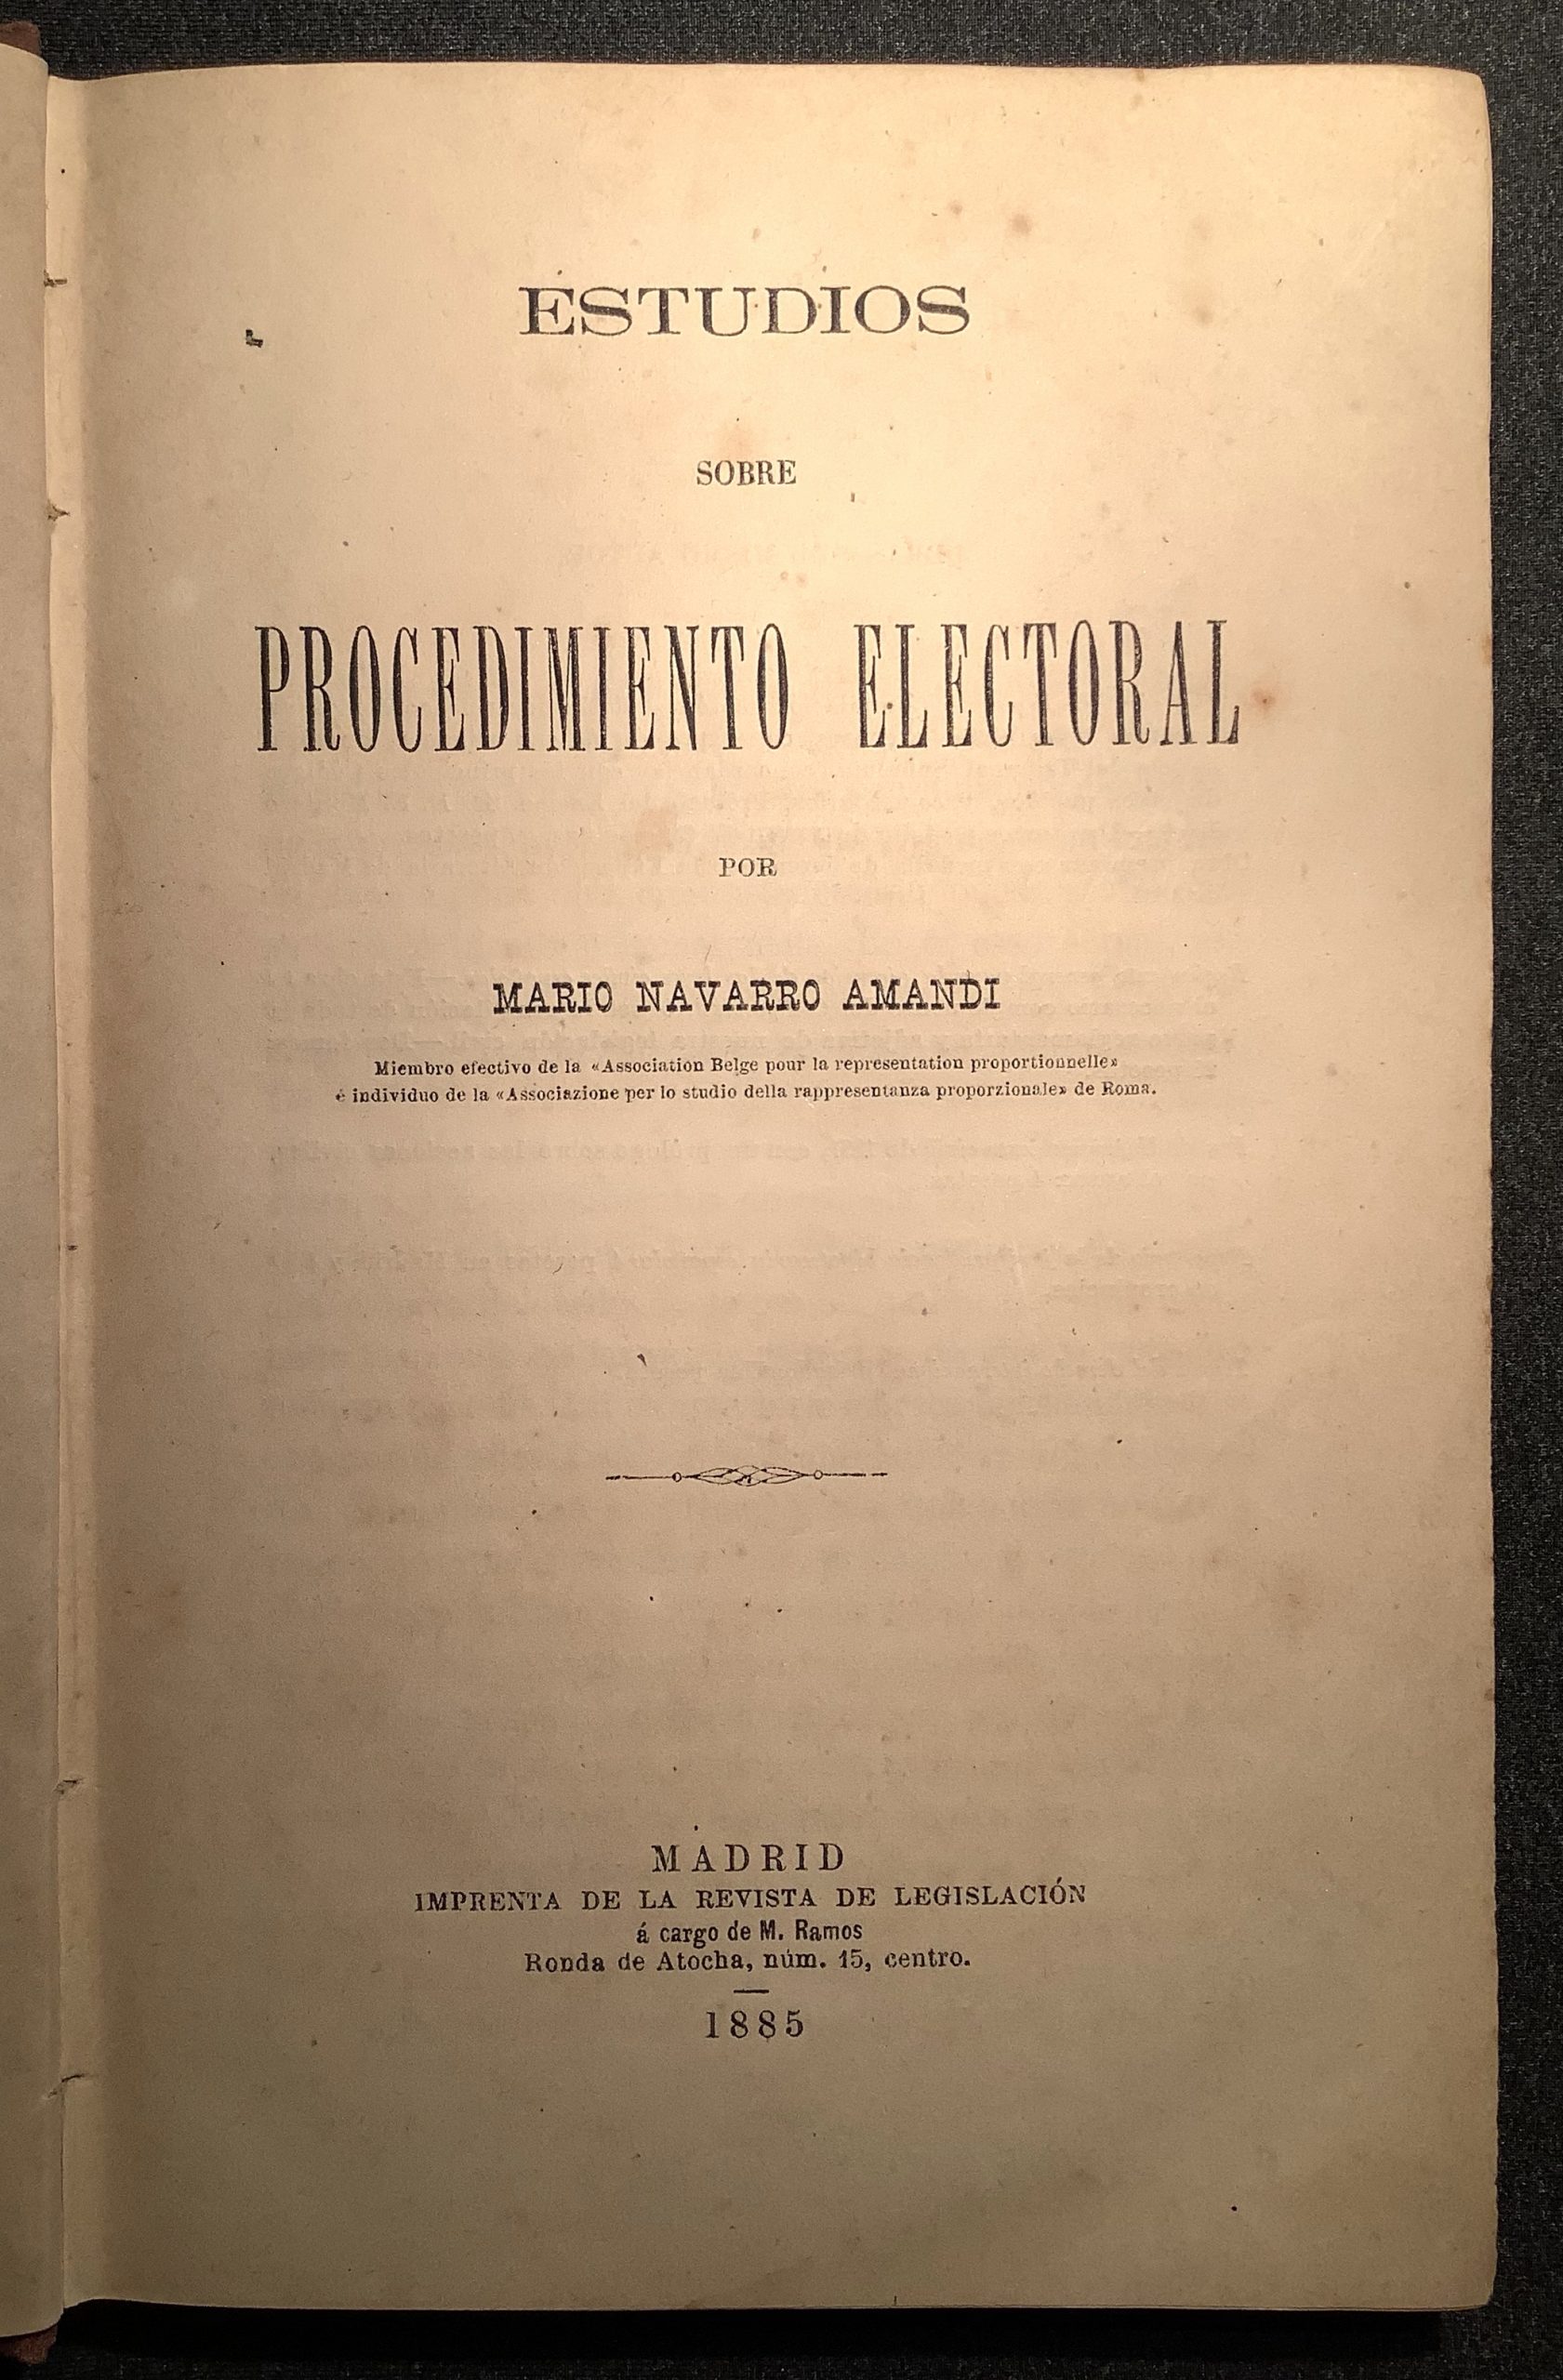 Portada dels Estudios sobre sobre Procedimiento Electoral, de Mario Navarro Amandi 1885